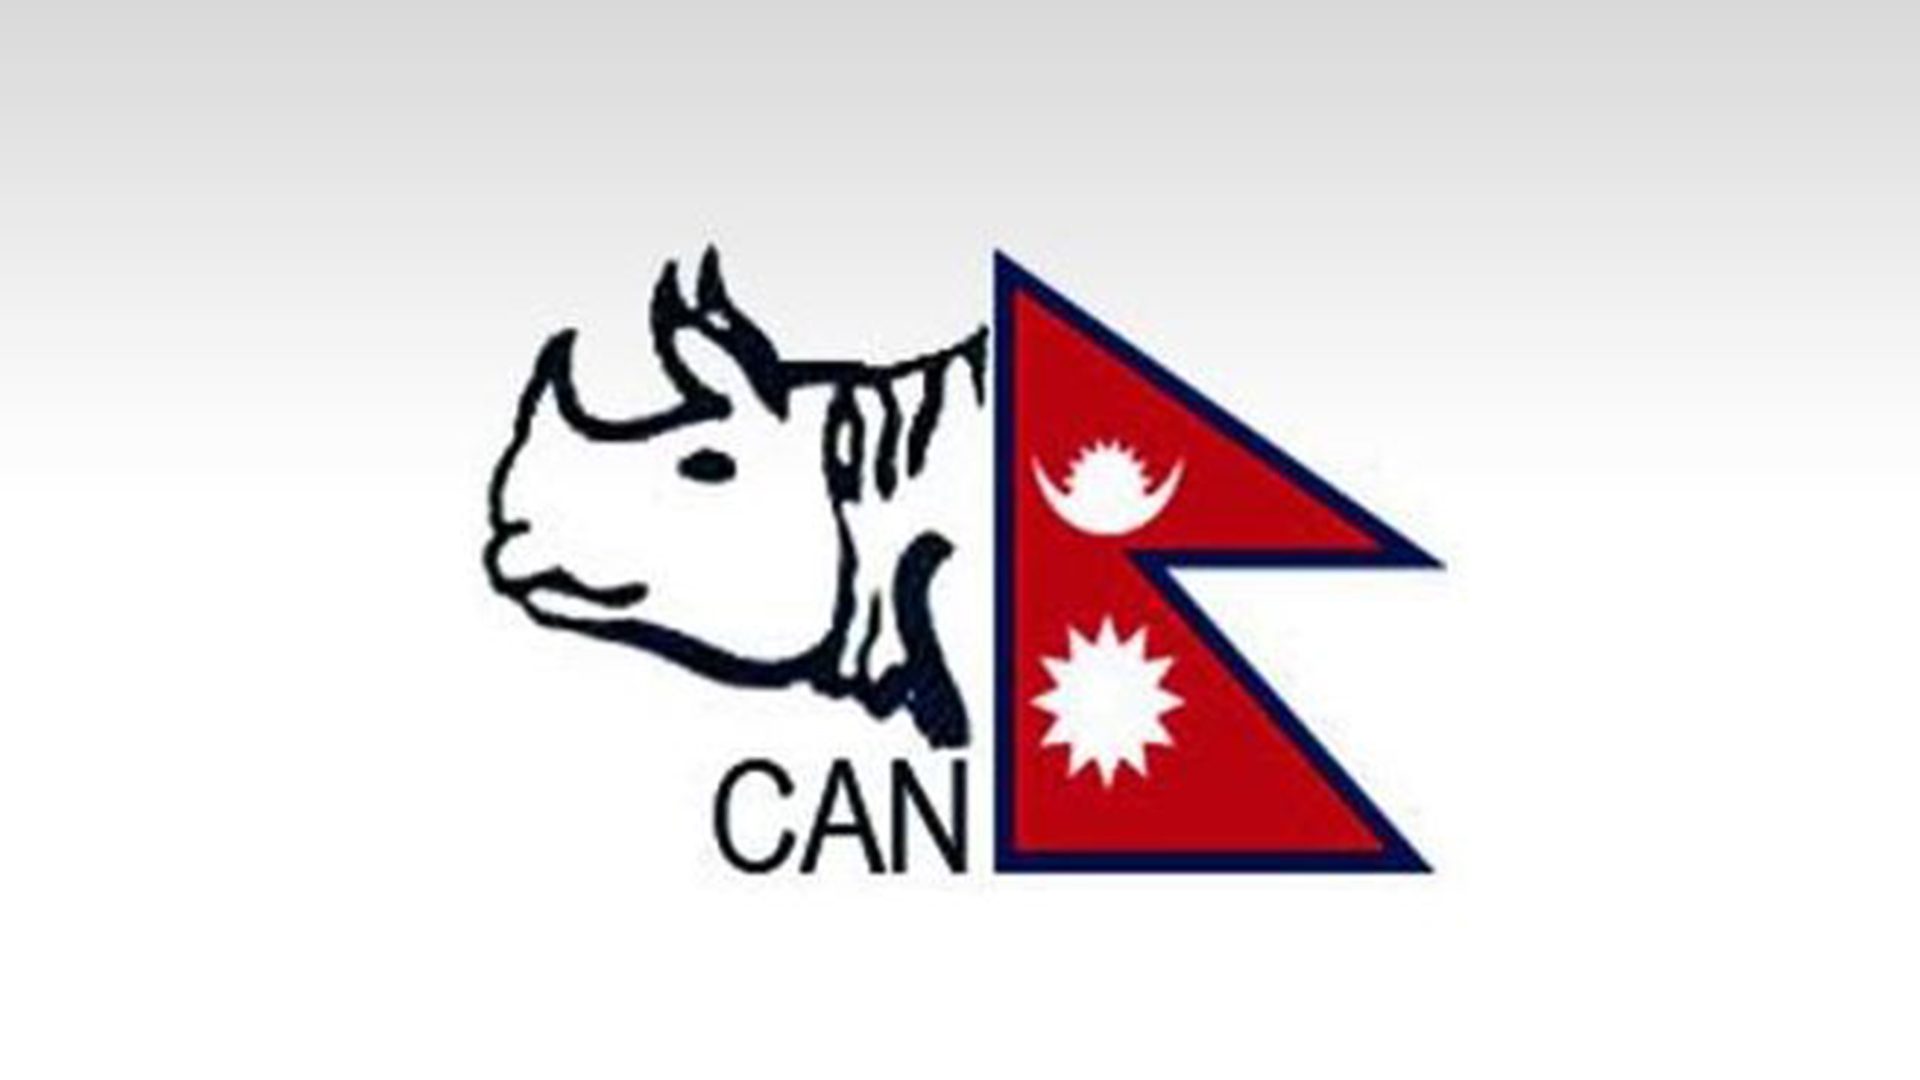 नेपाल क्रिकेट संघ क्यानले खेलाडीको तलब खातामा पठायो